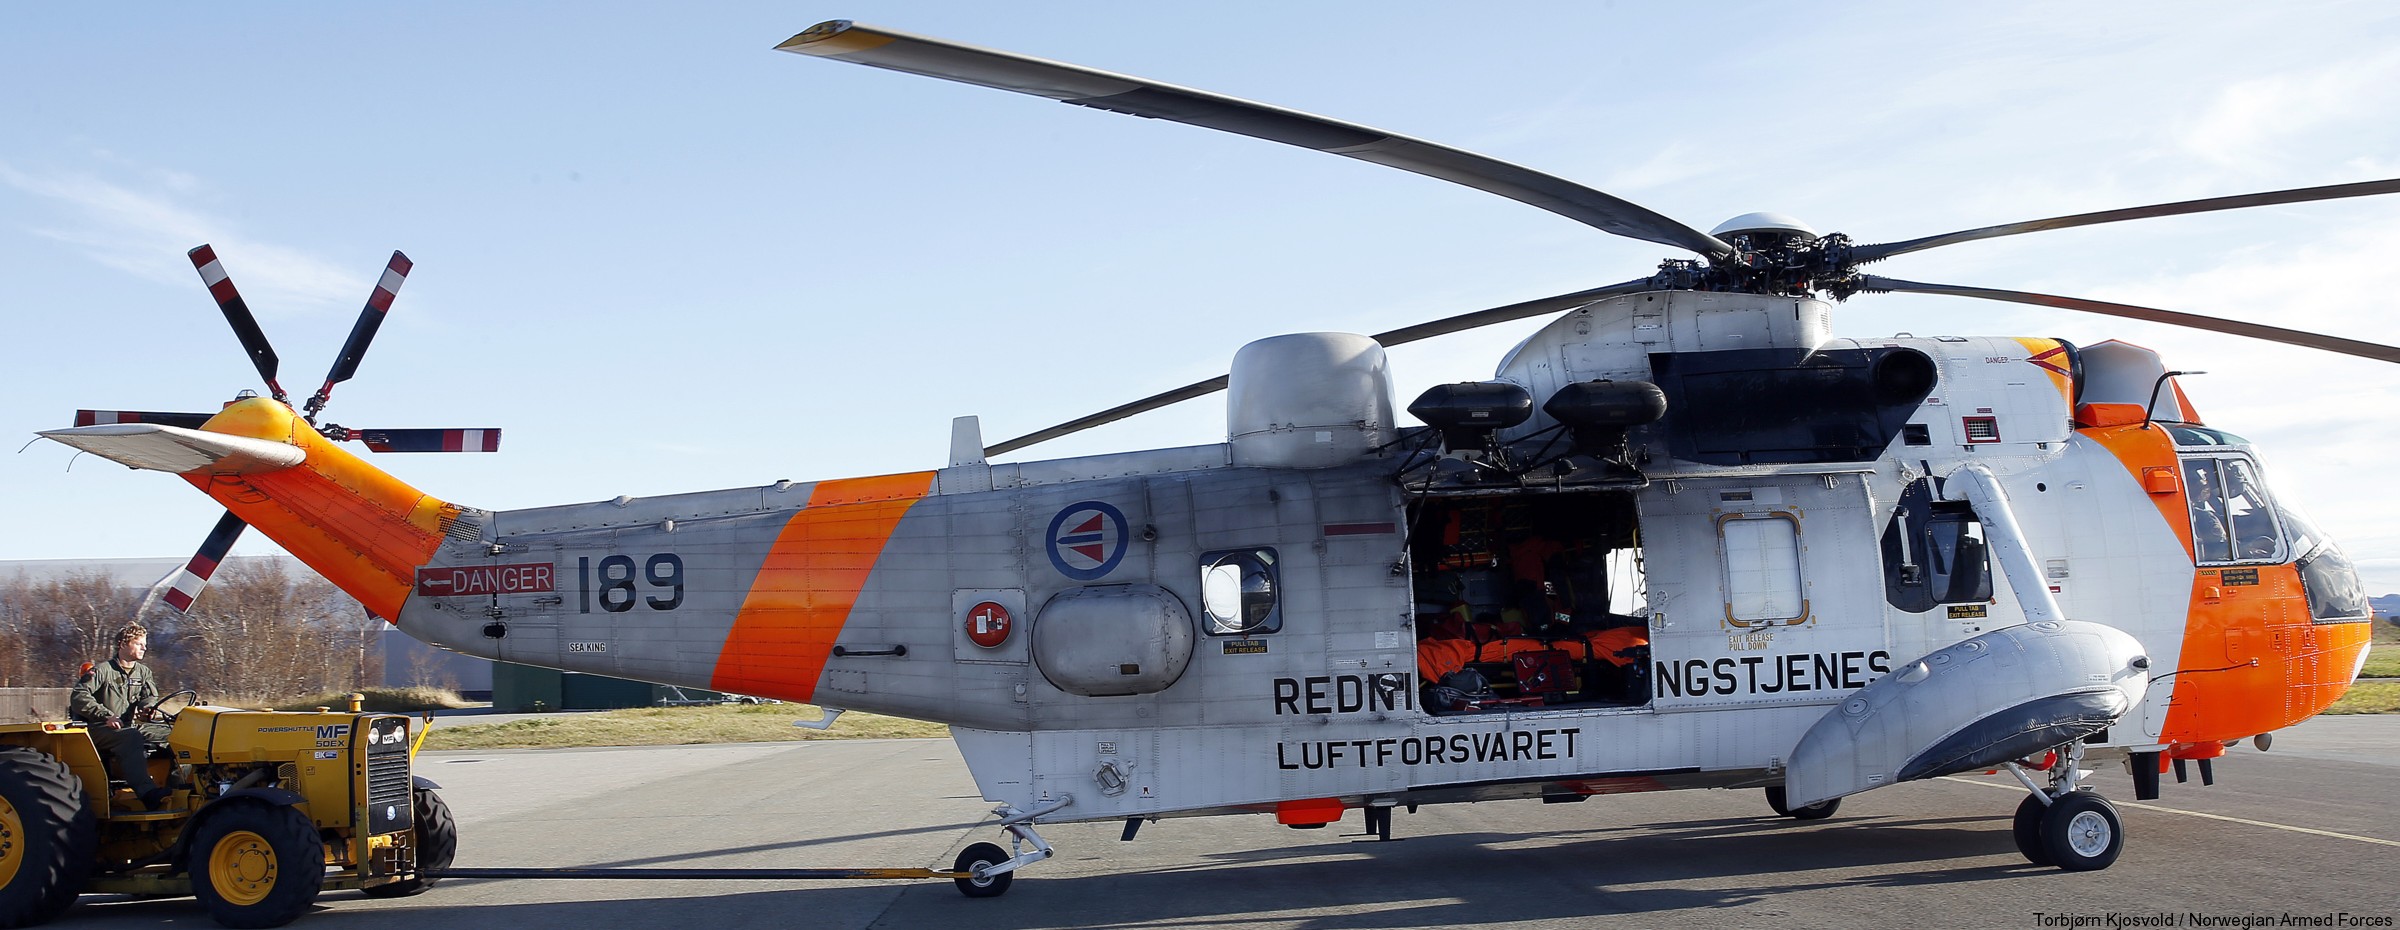 westland ws-61 sea king royal norwegian air force sar rescue 330 squadron skvadron luftforsvaret 189 02